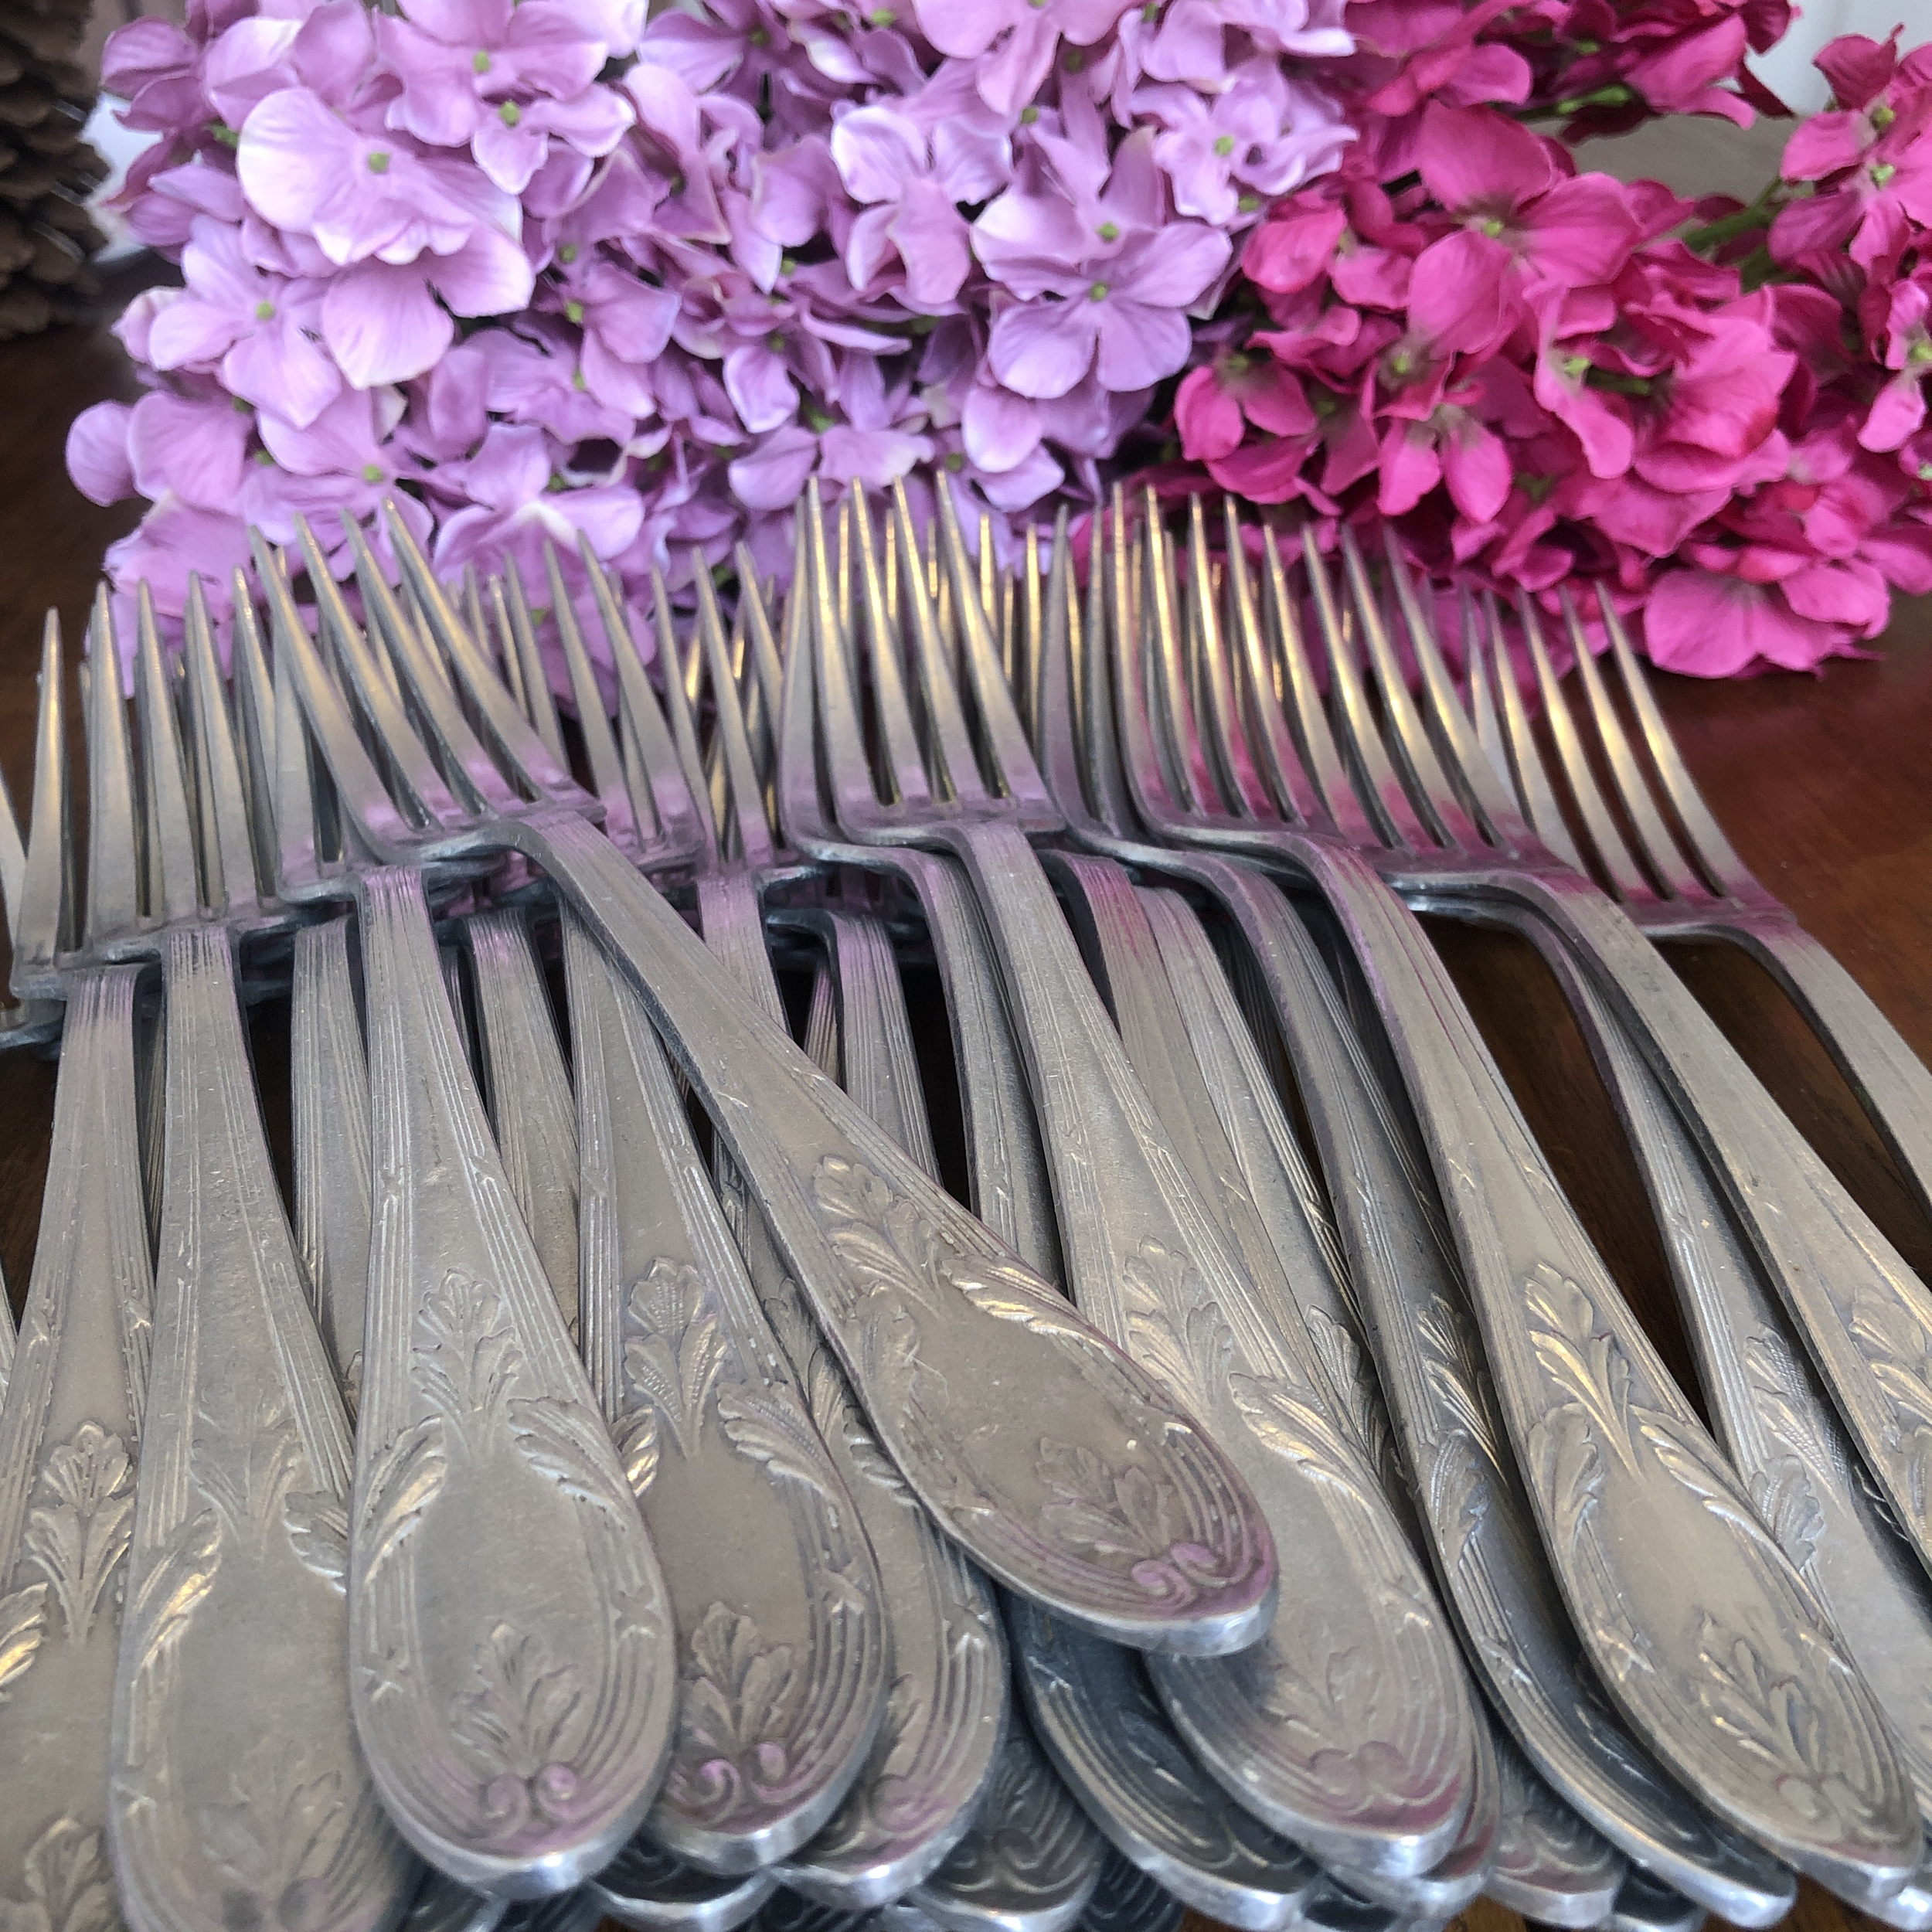 chineuse de merveilles fourchettes, cuilleres, couteaux couverts, brocante, vintage IMG_3544